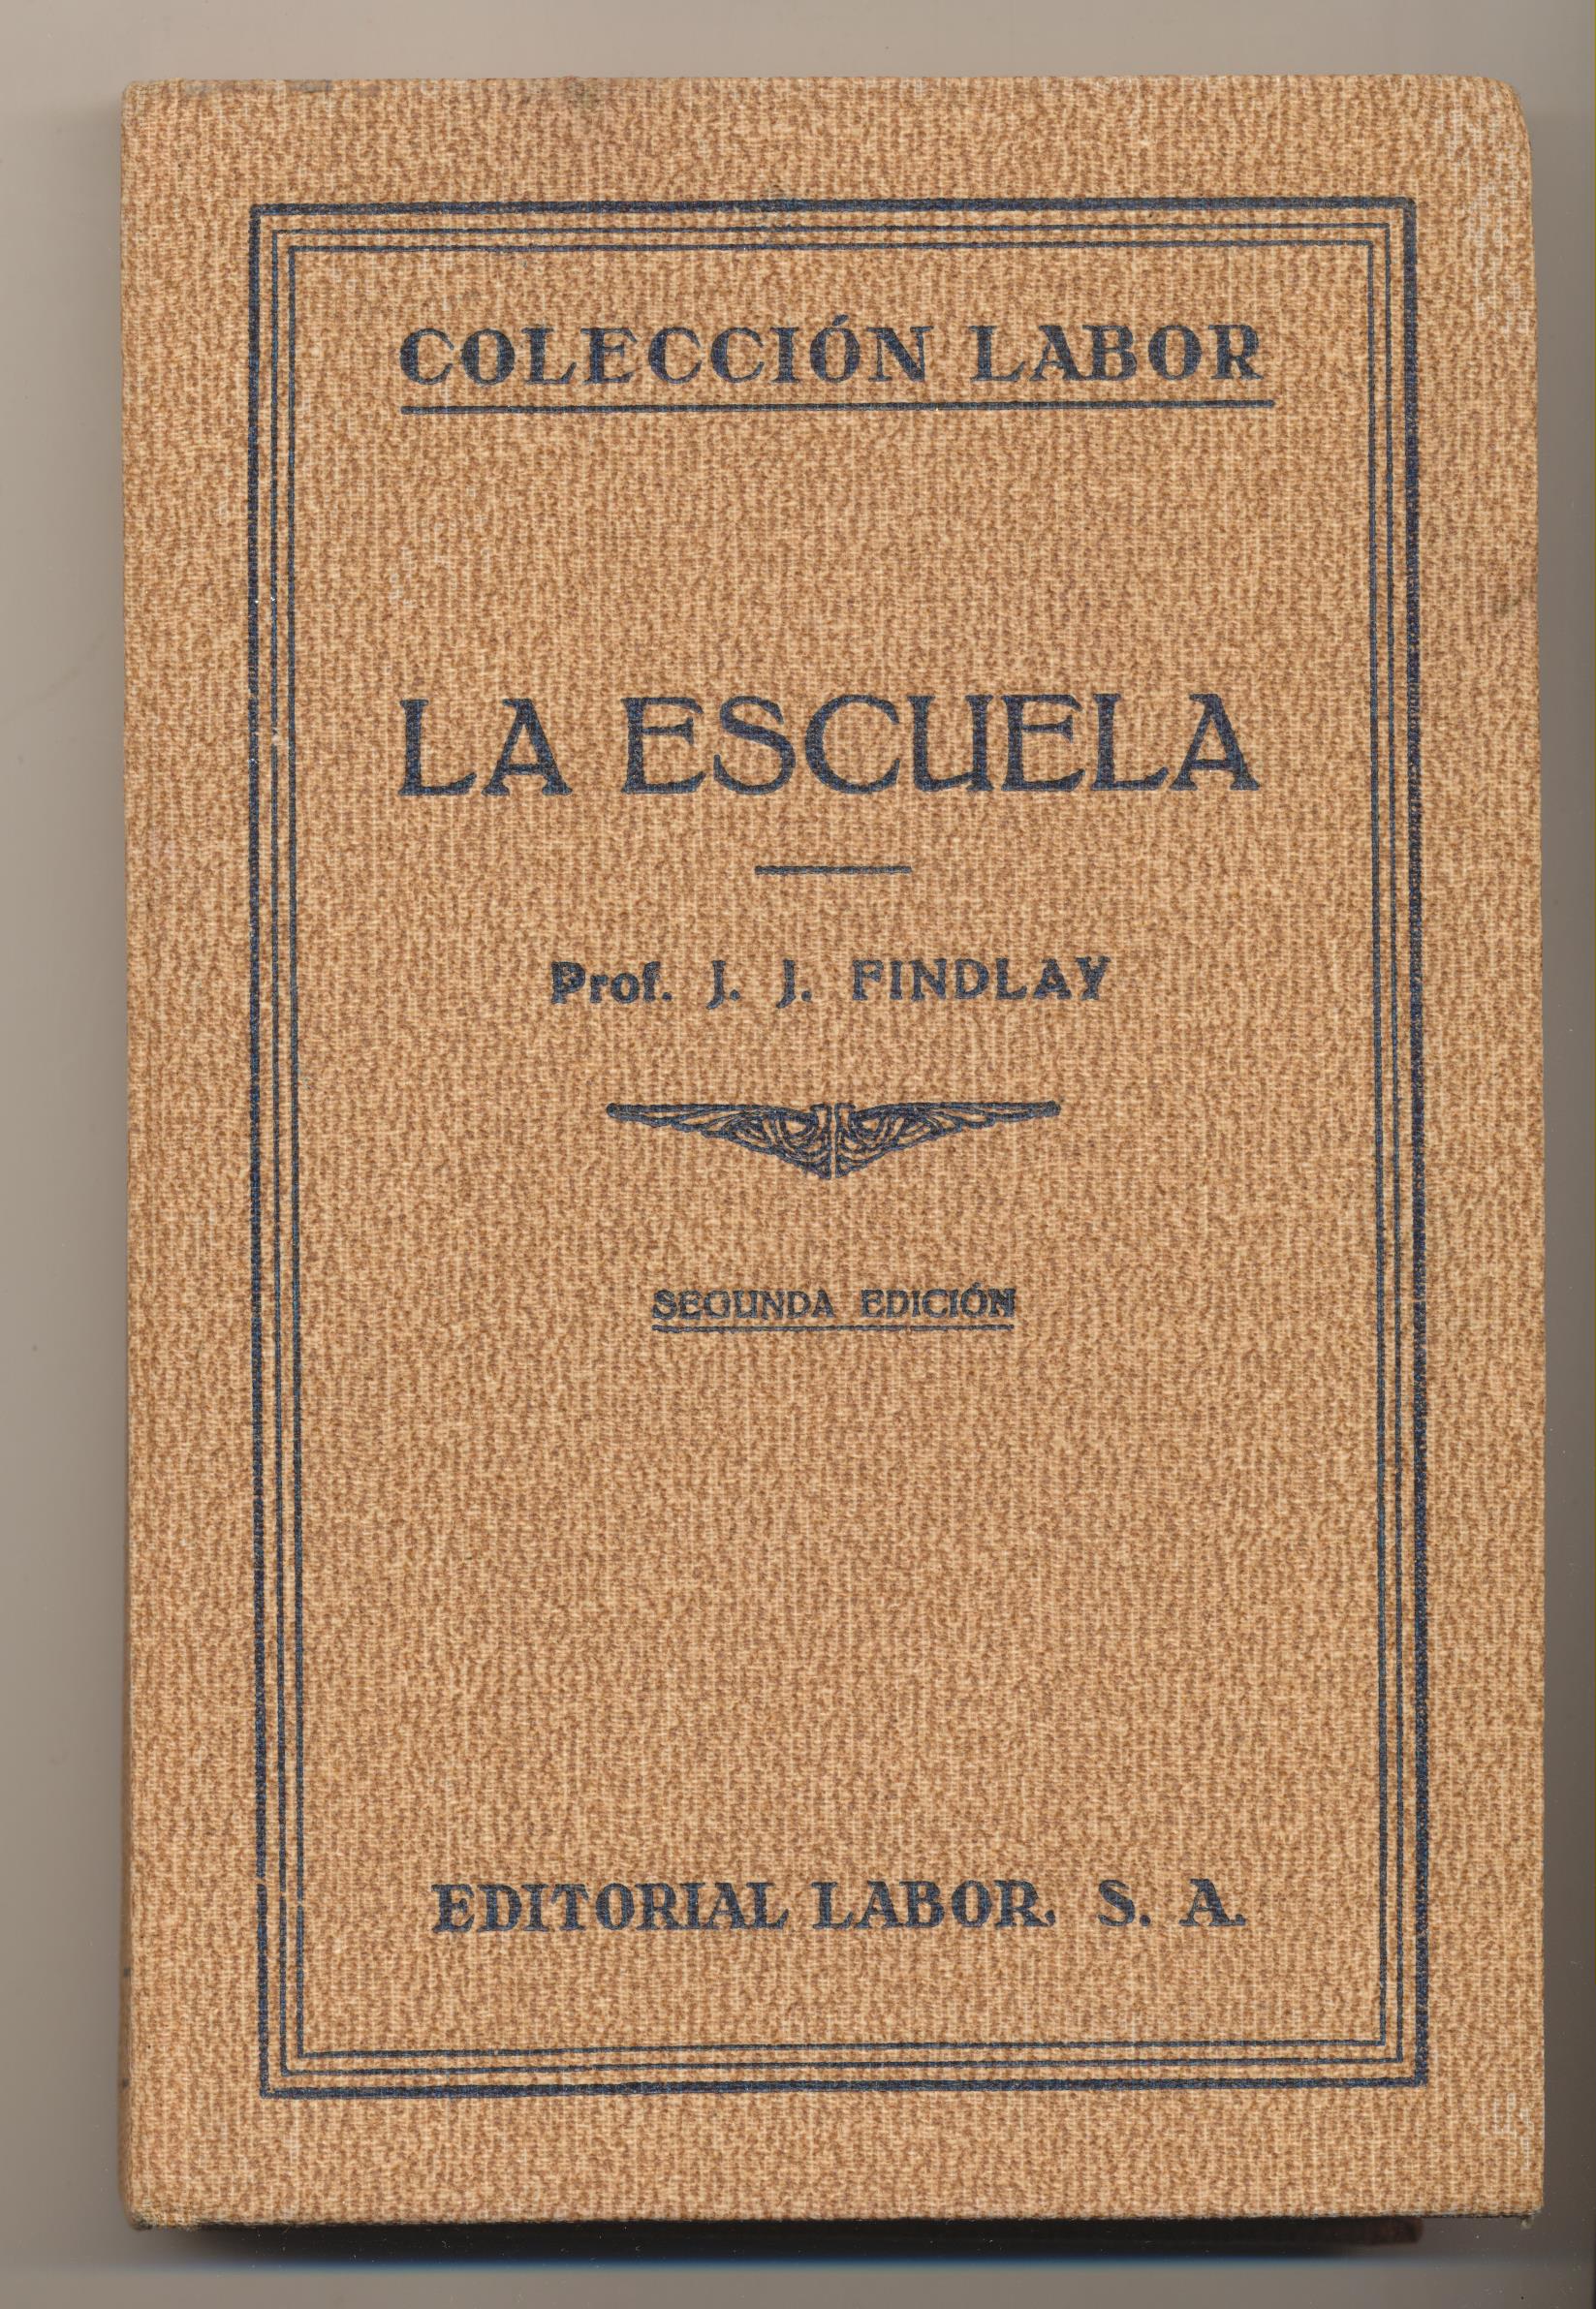 COlécción Labor. La Escuela por Prof. J.J. Findlay. 2ª Edición Labor 1934